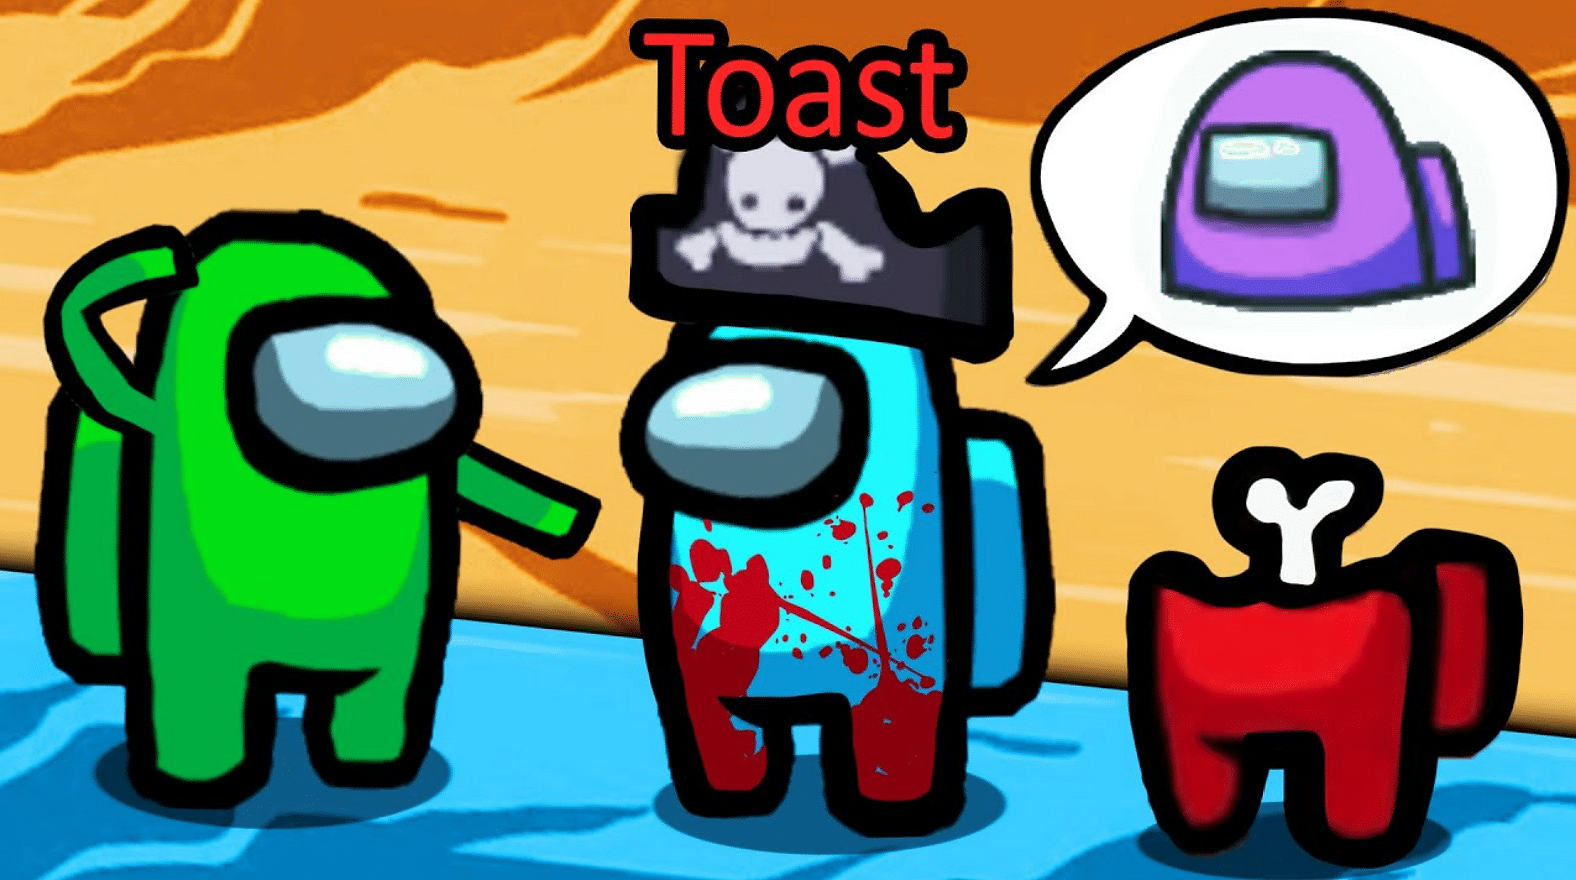 toast and among us